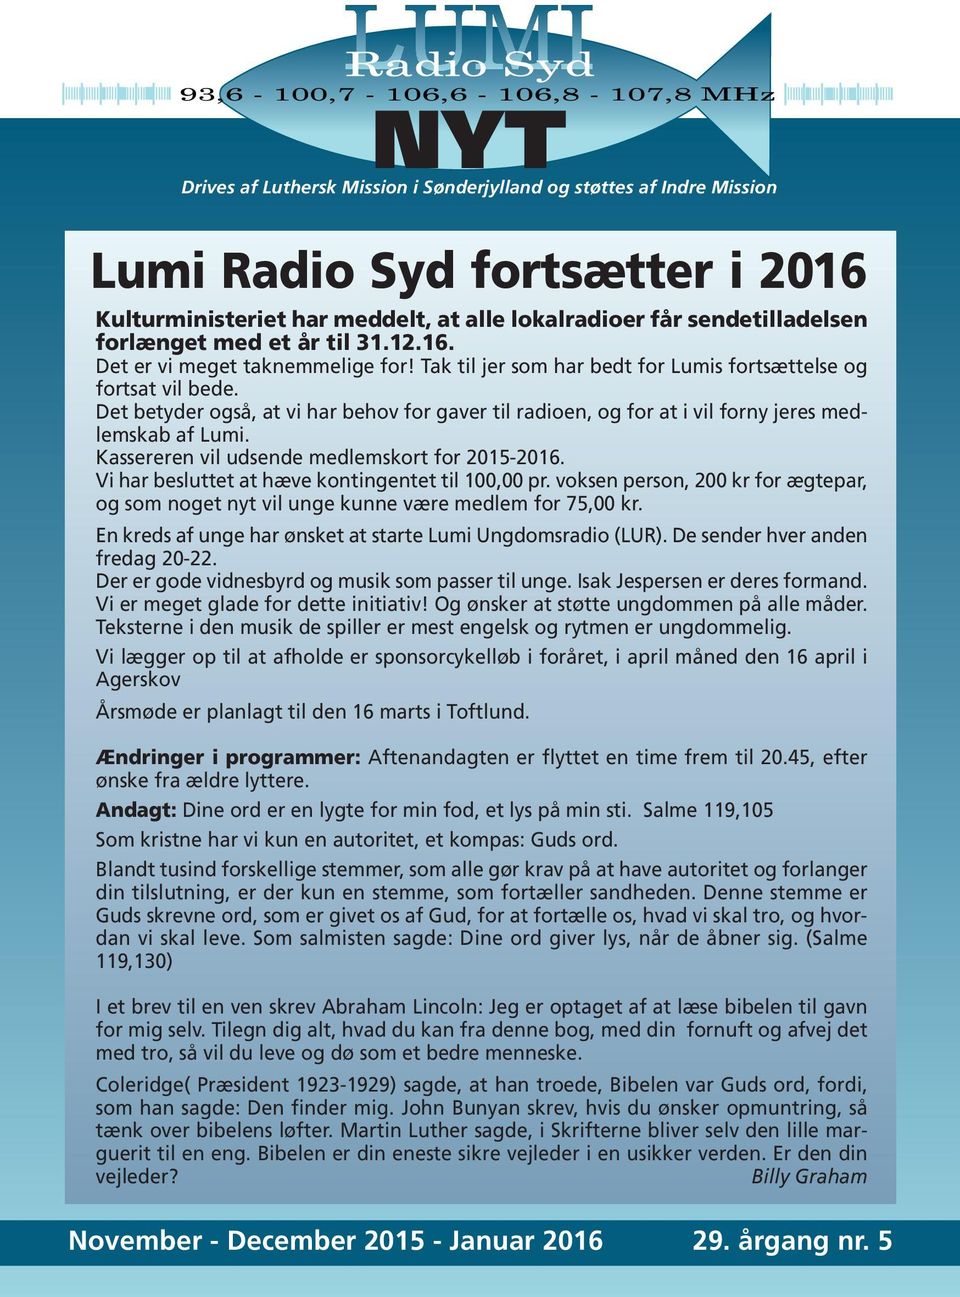 Det betyder også, at vi har behov for gaver til radioen, og for at i vil forny jeres medlemskab af Lumi. Kassereren vil udsende medlemskort for 2015-2016.